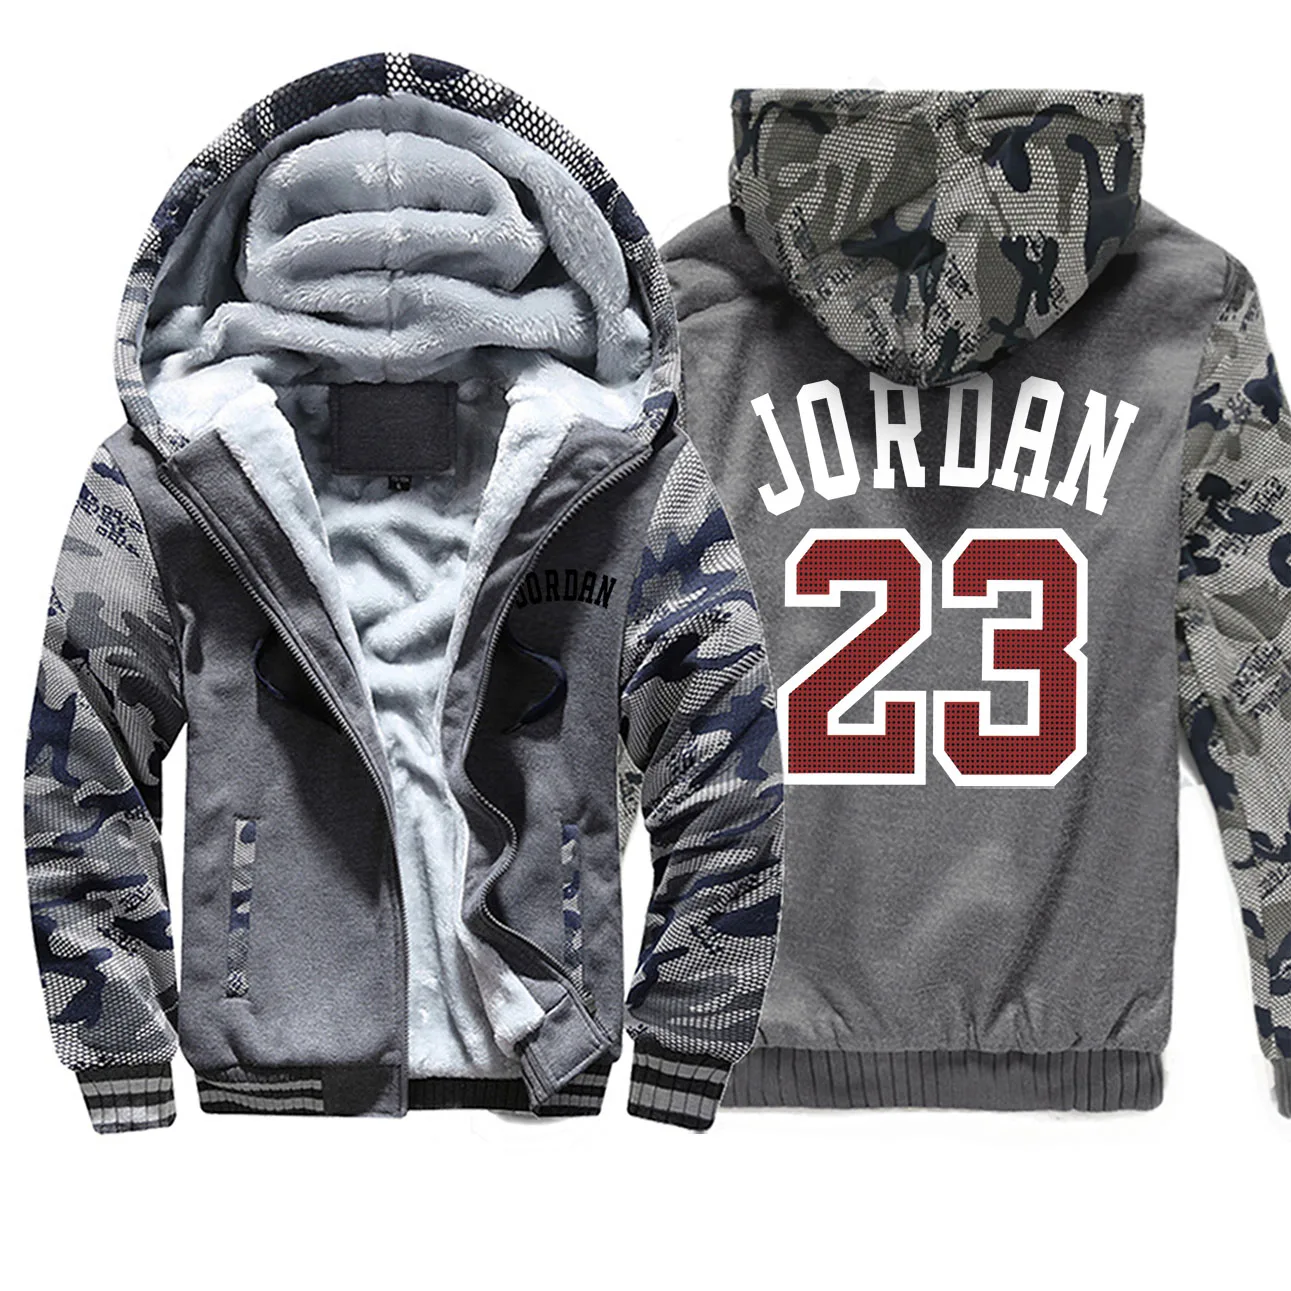 Jordan 23 Зимние толстовки с принтом, реглан, Мужская камуфляжная спортивная одежда, новинка, уличная одежда в стиле хип-хоп, модное пальто, плотные толстовки